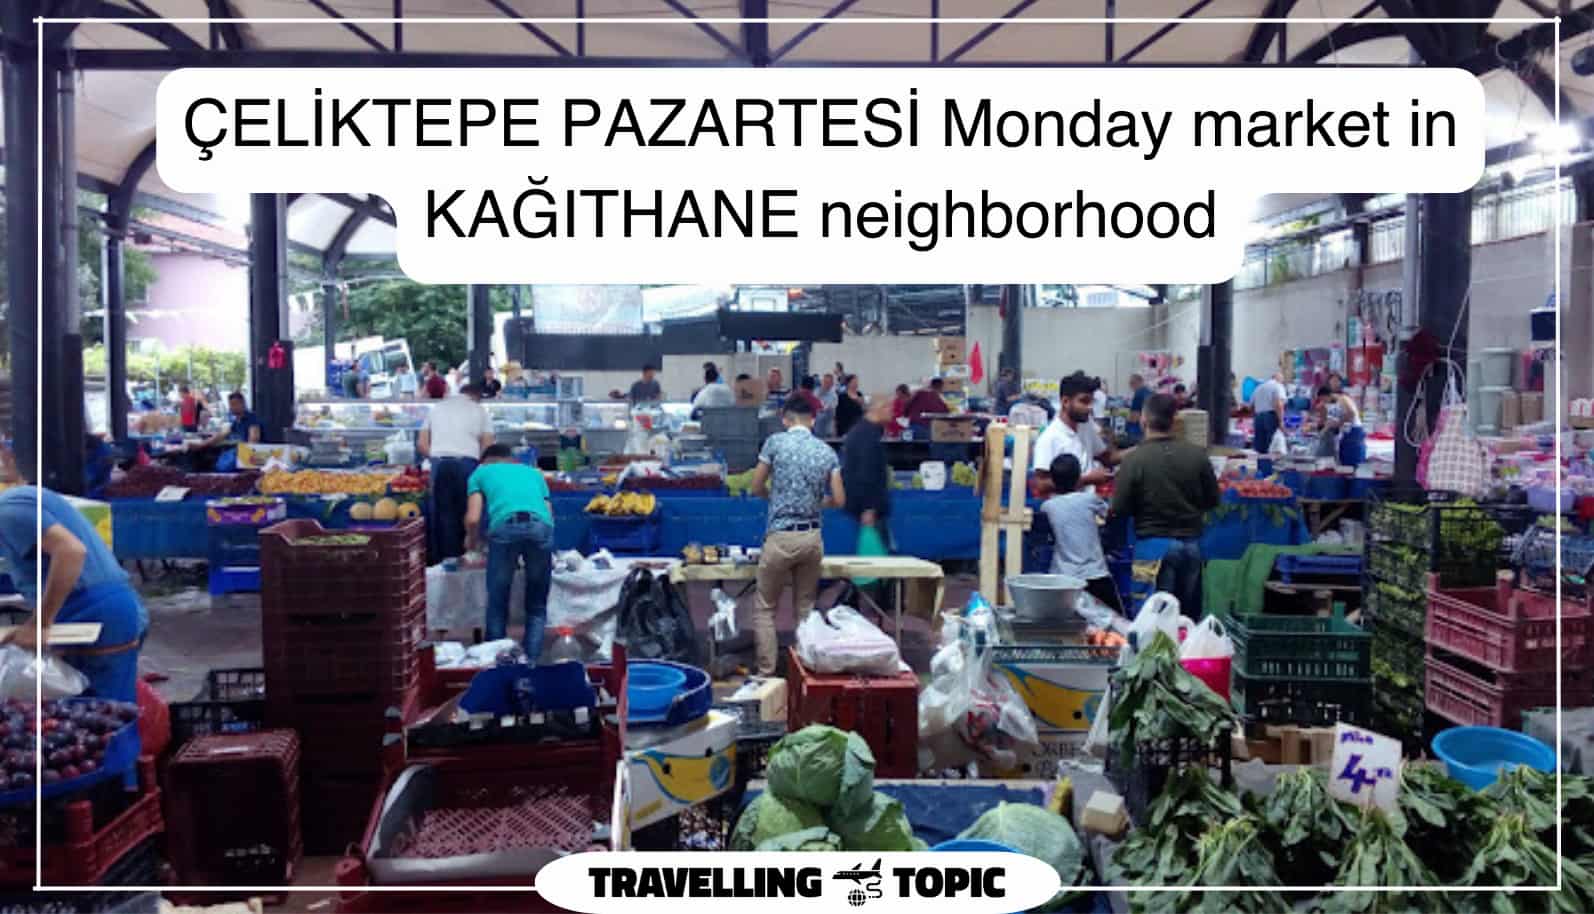 ÇELİKTEPE PAZARTESİ Monday market in KAĞITHANE neighborhood